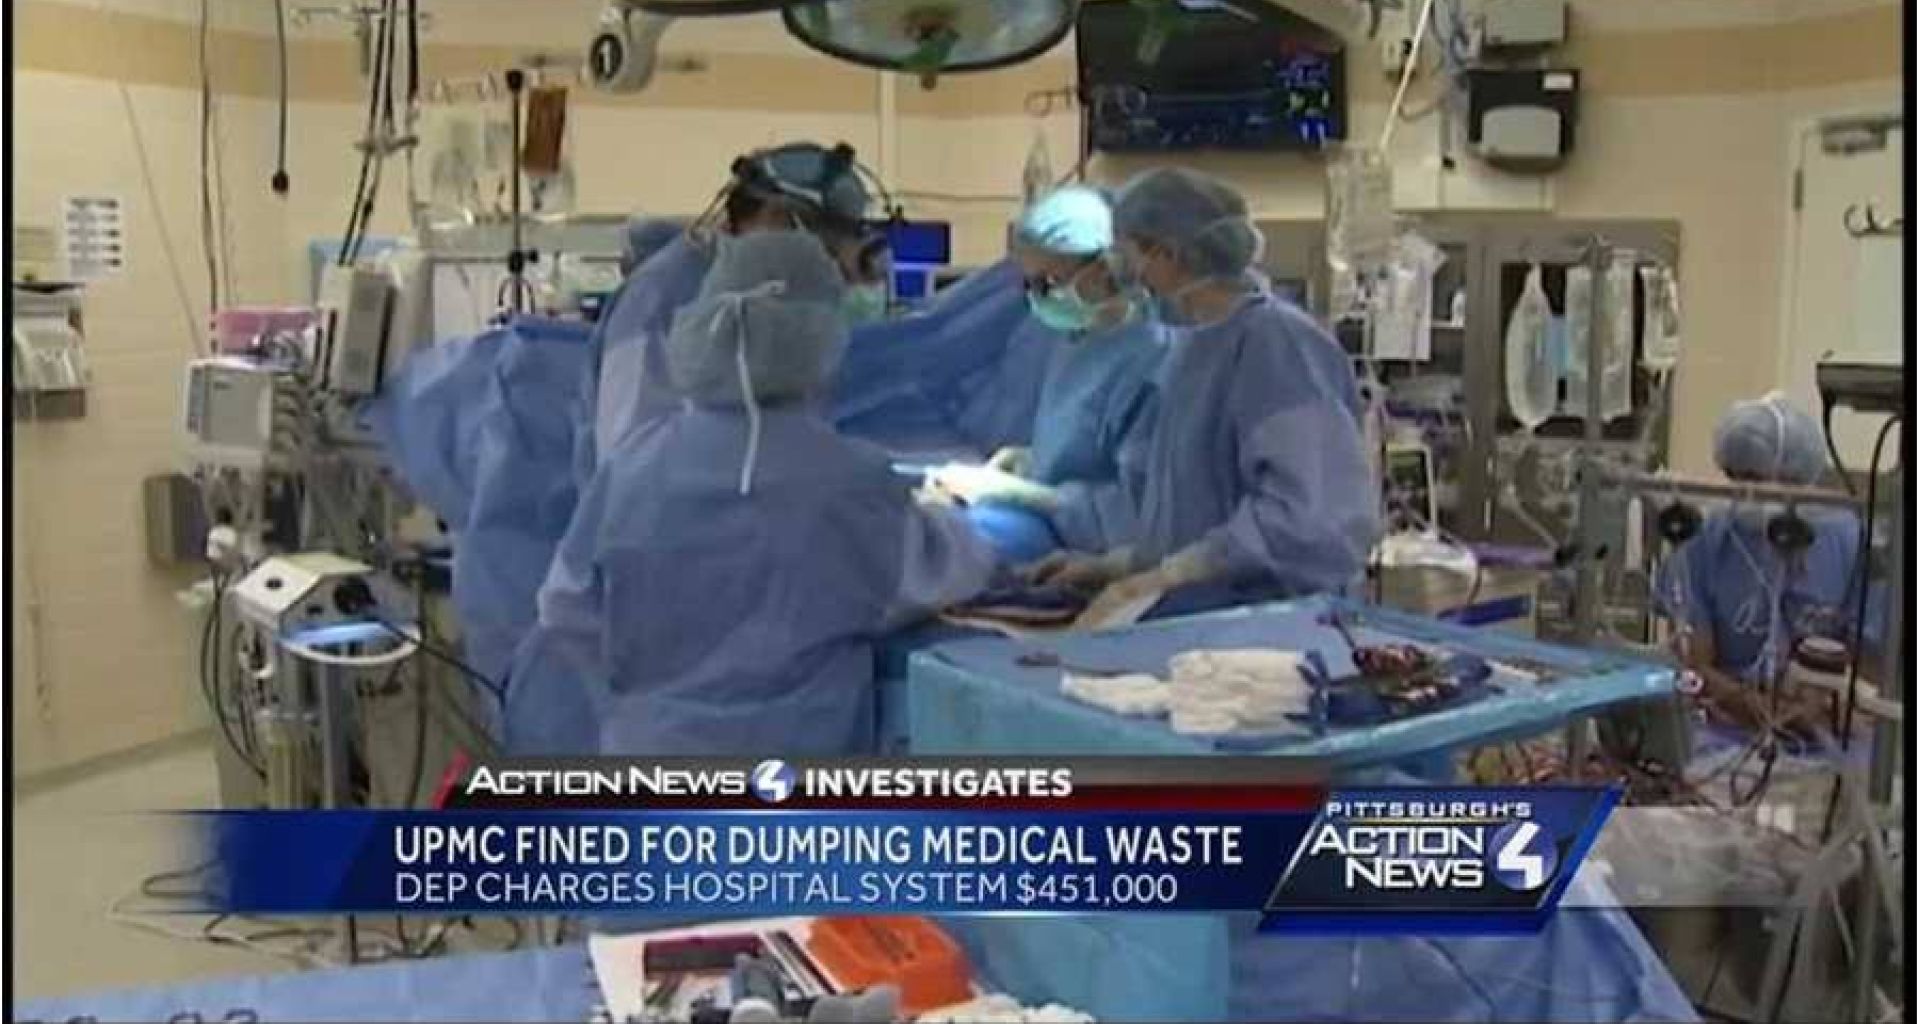 إدارة حماية البيئة غرمت 12 مستشفى بمخالفات مالية قدرها 450 ألف دولار بسبب انتهاكات قانون إدارة النفايات الصلبة.